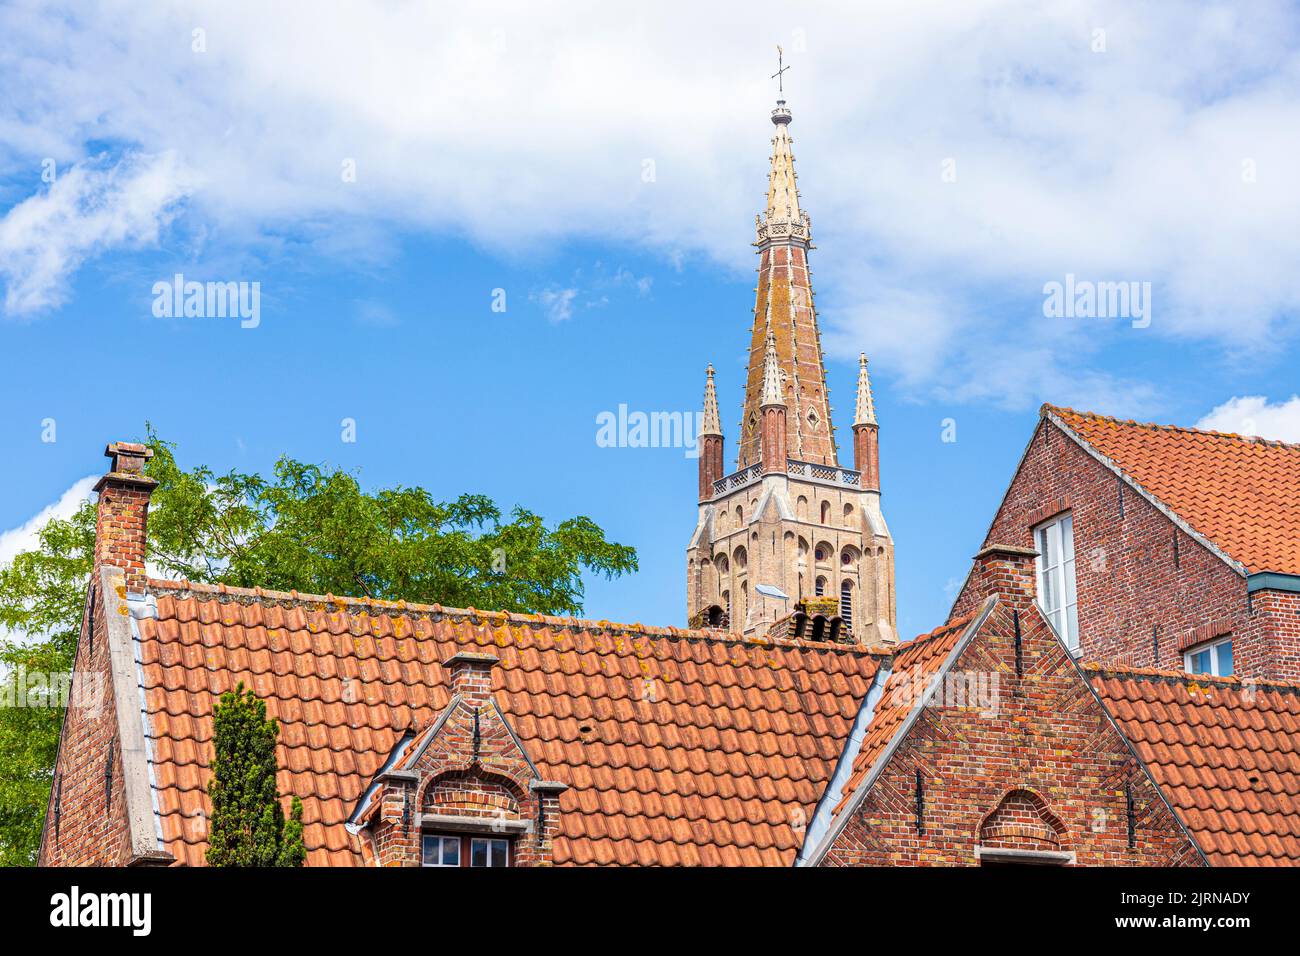 La aguja de la Iglesia de Nuestra Señora (Onze-Lieve-Vrouwekerk) con vistas a los techos pantanados de casas antiguas en Brujas, Bélgica Foto de stock